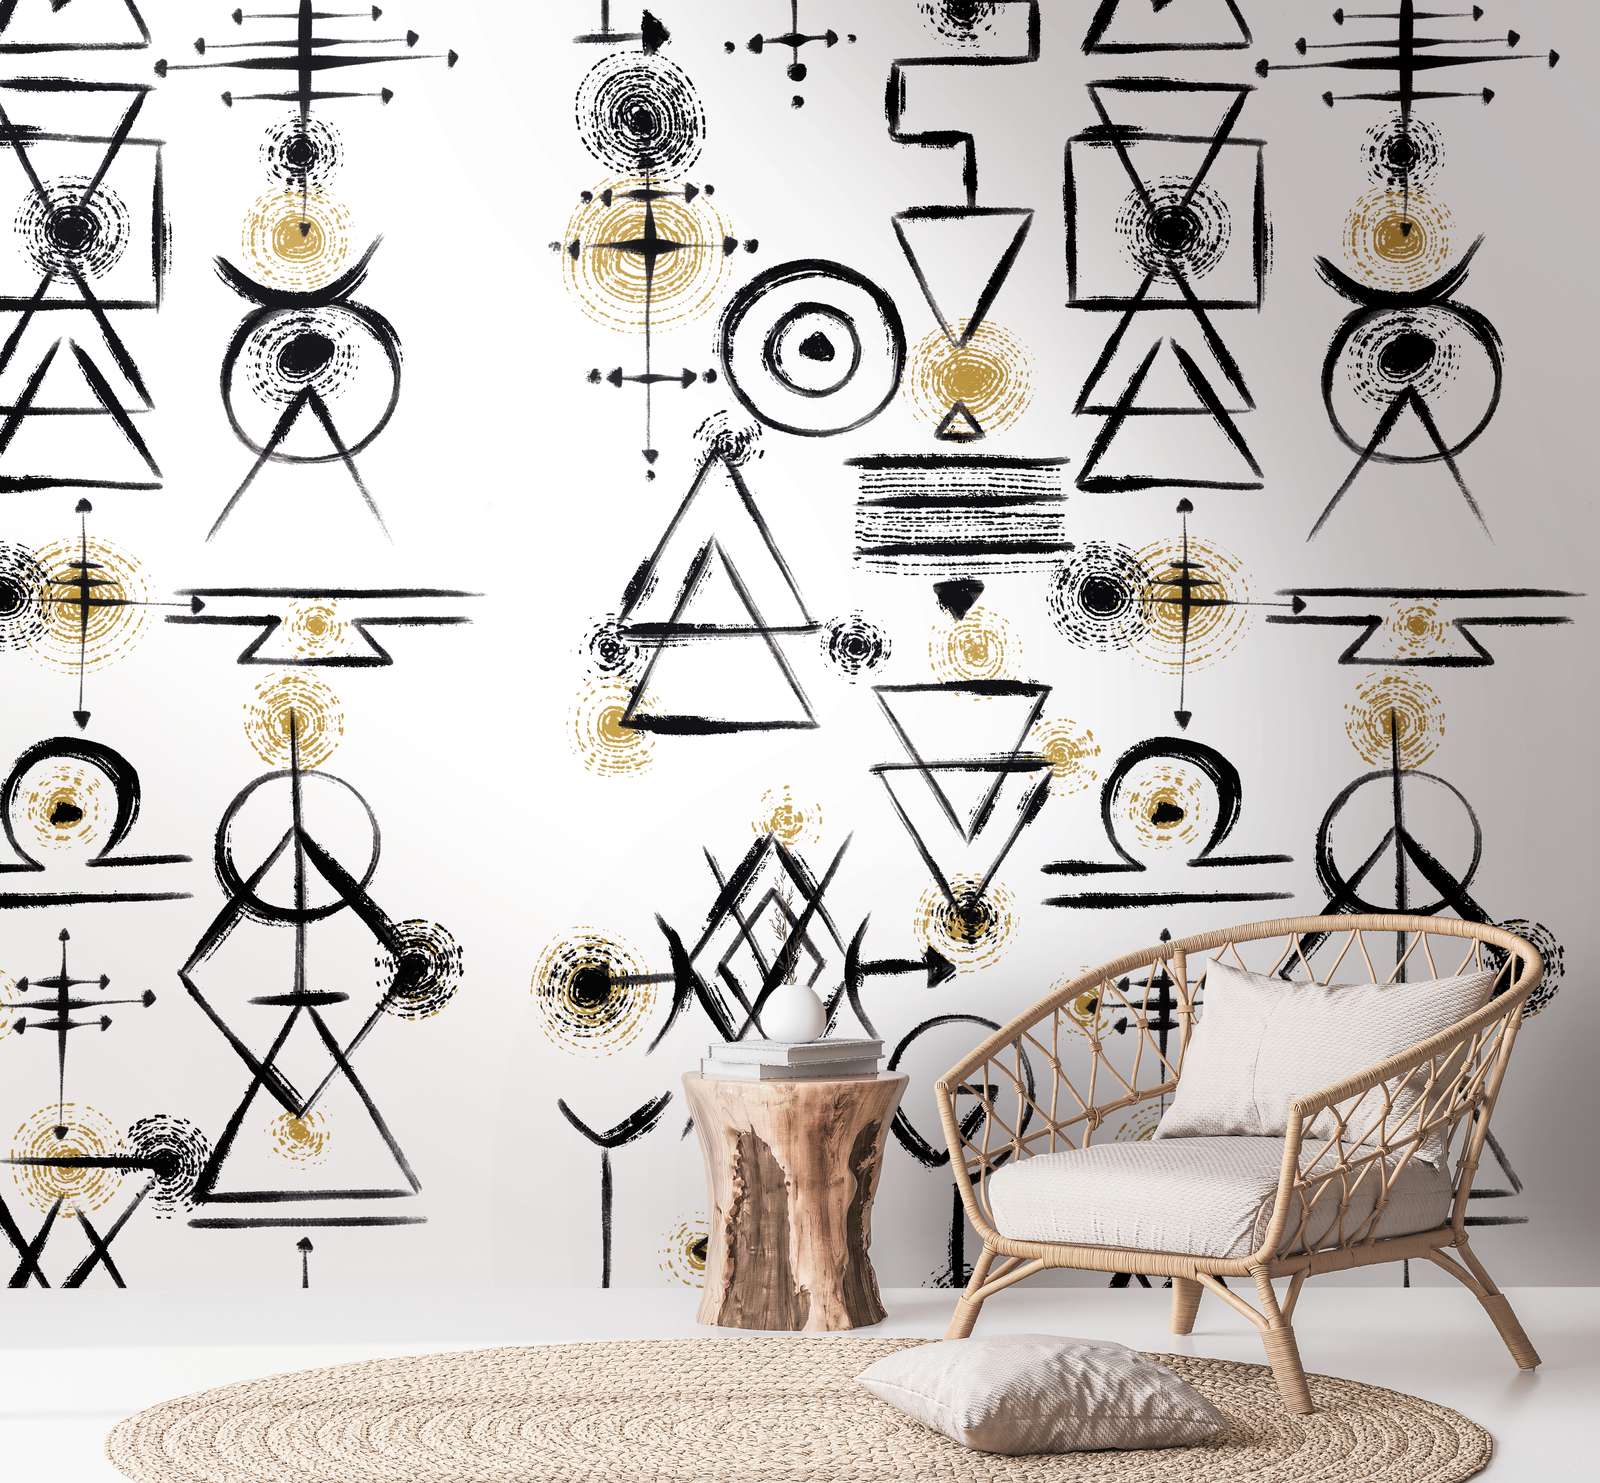             Onderlaag behang met abstracte symbolen op een lichte achtergrond - wit, zwart, goud
        